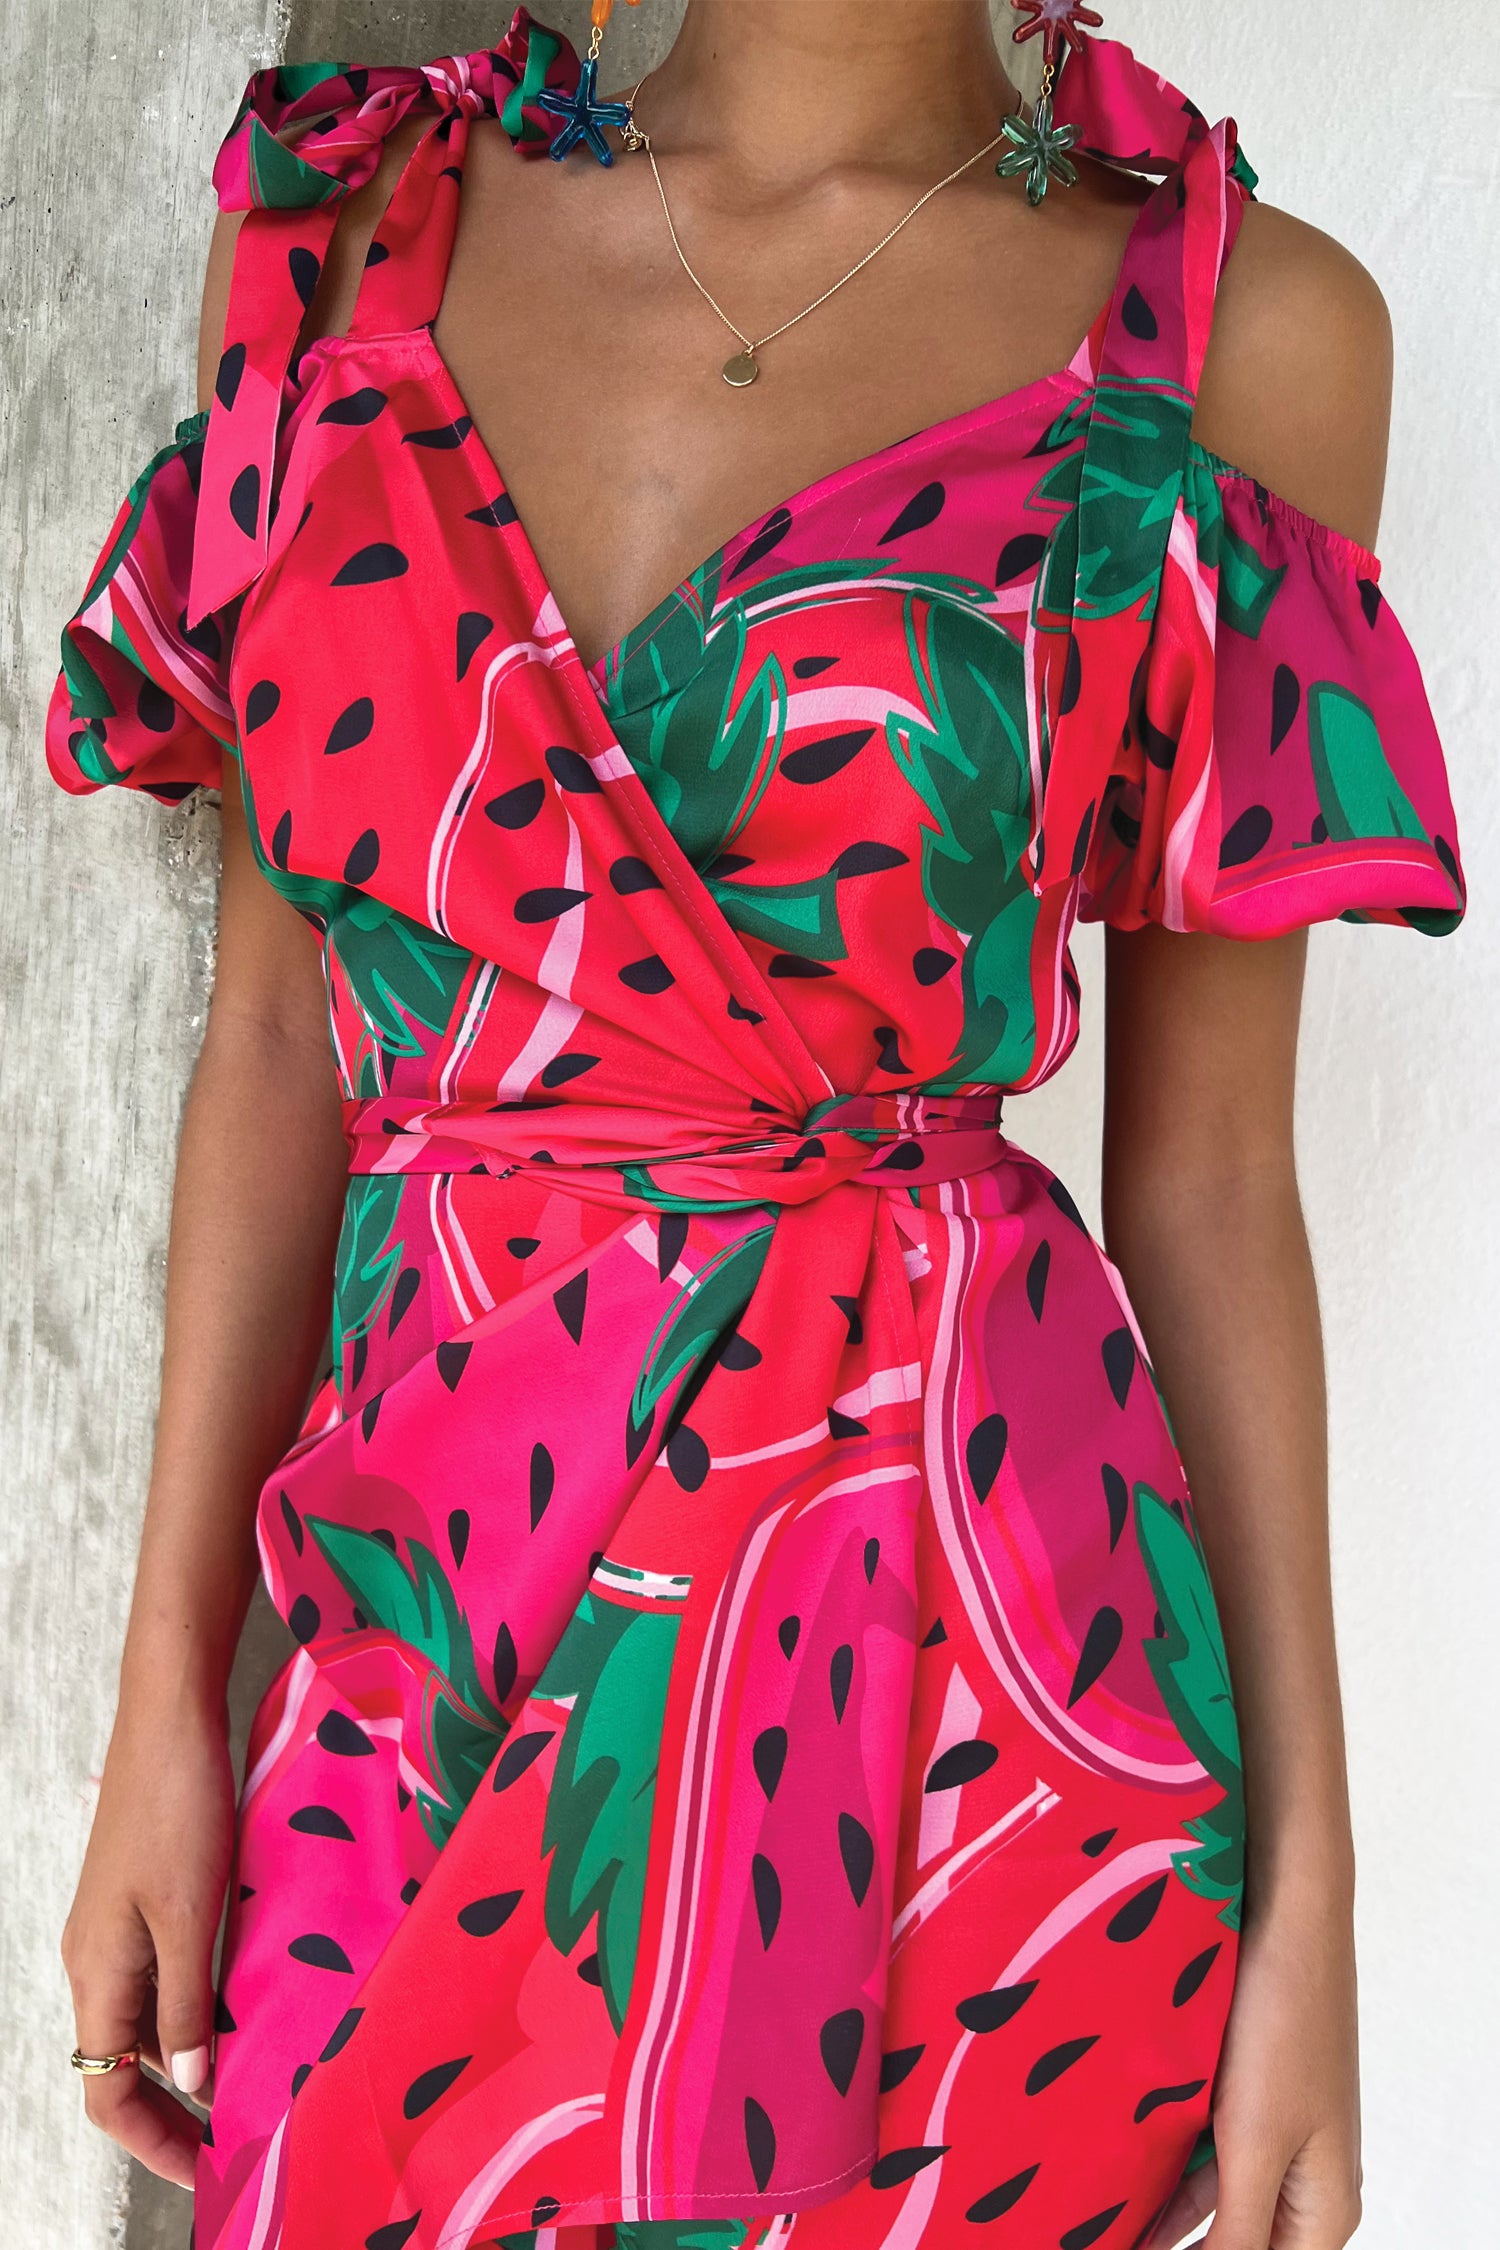 Model wearing Strawberry Mini Dress close up